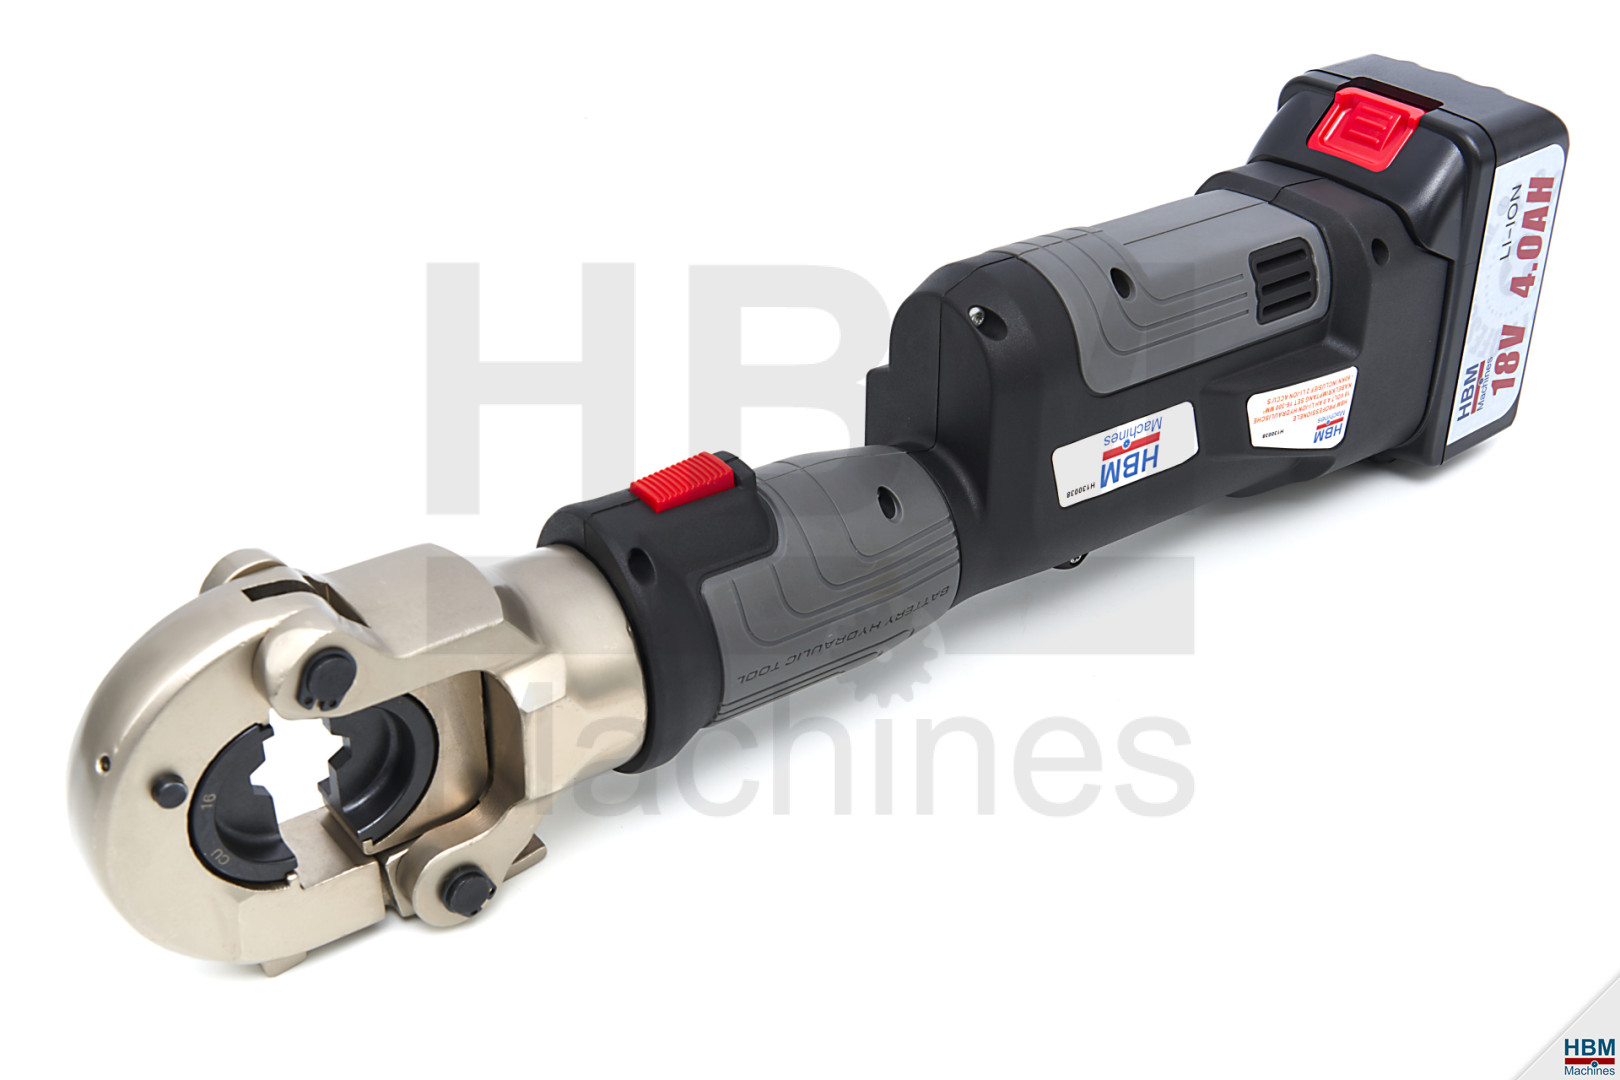 HBM Professionelle hydraulische Kabelquetschzange Satz 16-300 mm² - 60kN  auf Batterie